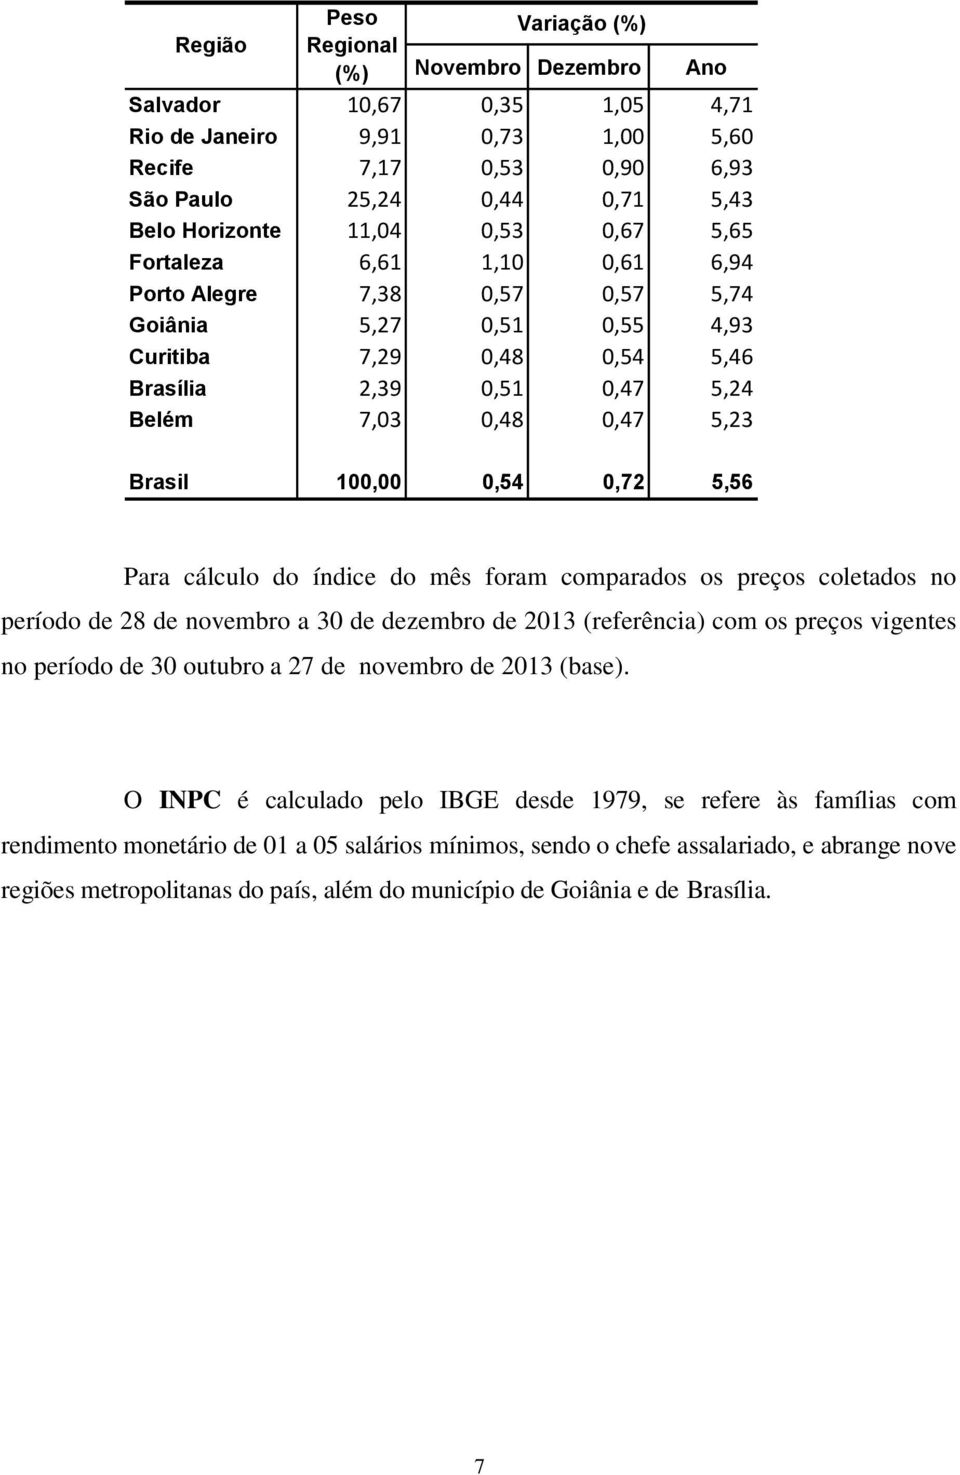 Brasil 100,00 0,54 0,72 5,56 Para cálculo do índice do mês foram comparados os preços coletados no período de 28 de novembro a 30 de dezembro de 2013 (referência) com os preços vigentes no período de